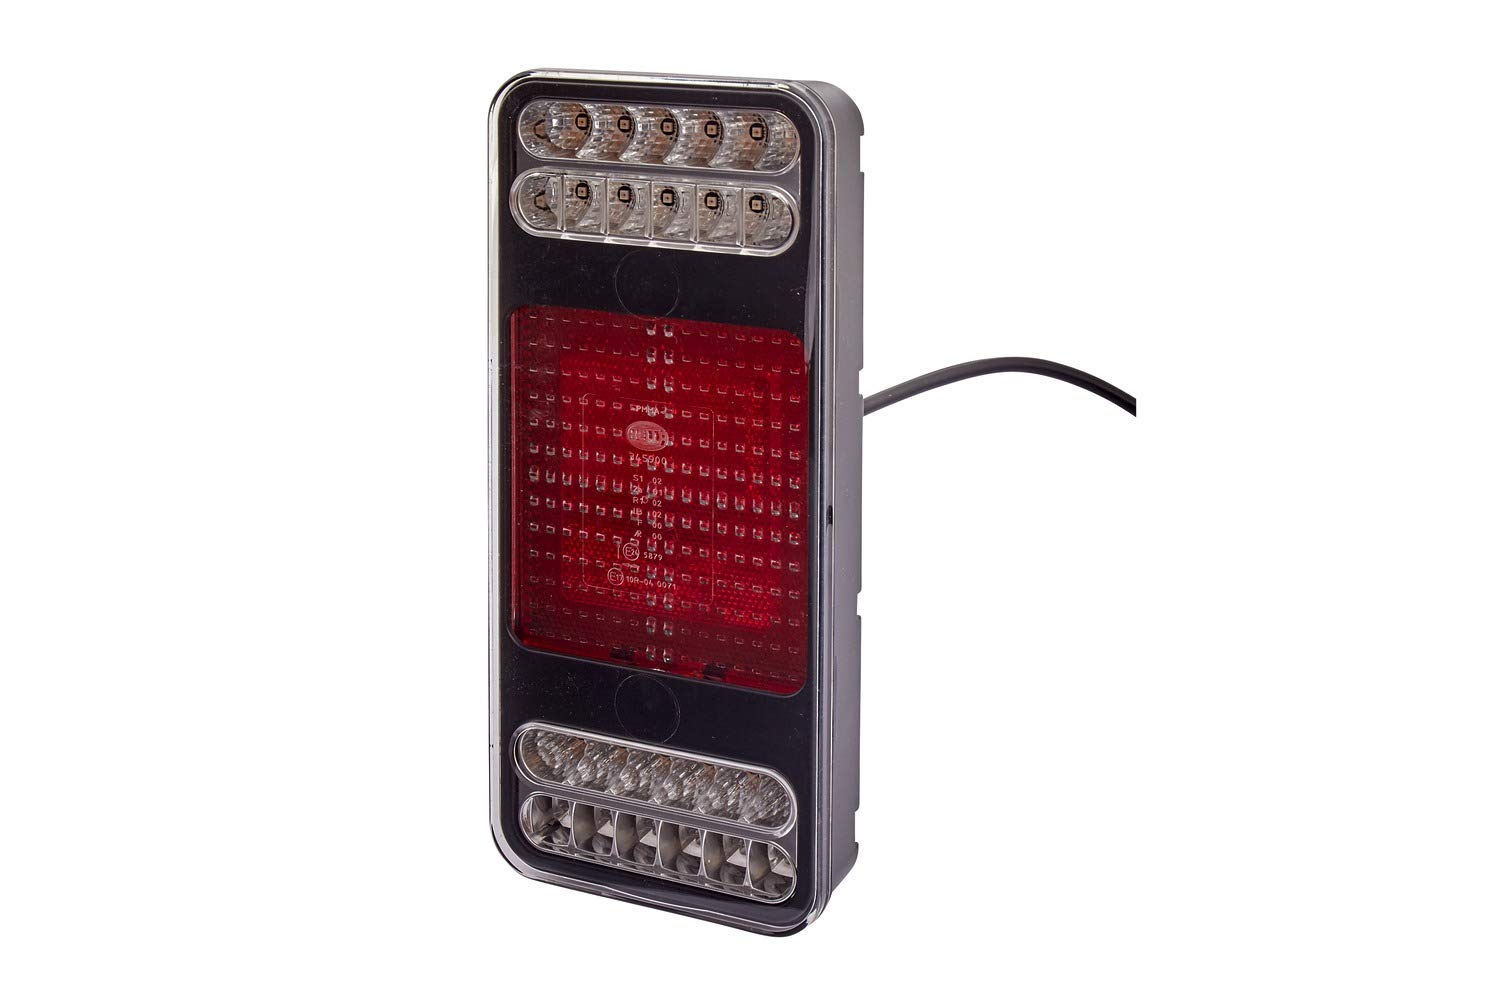 HELLA - Heckleuchte - Coluna - LED - 24V - Anbau/geschraubt - Lichtscheibenfarbe: glasklar - LED-Lichtfarbe: gelb/weiß/rot - Kabel: 500mm - rechts/links - Menge: 1 - 2VP 345 900-221